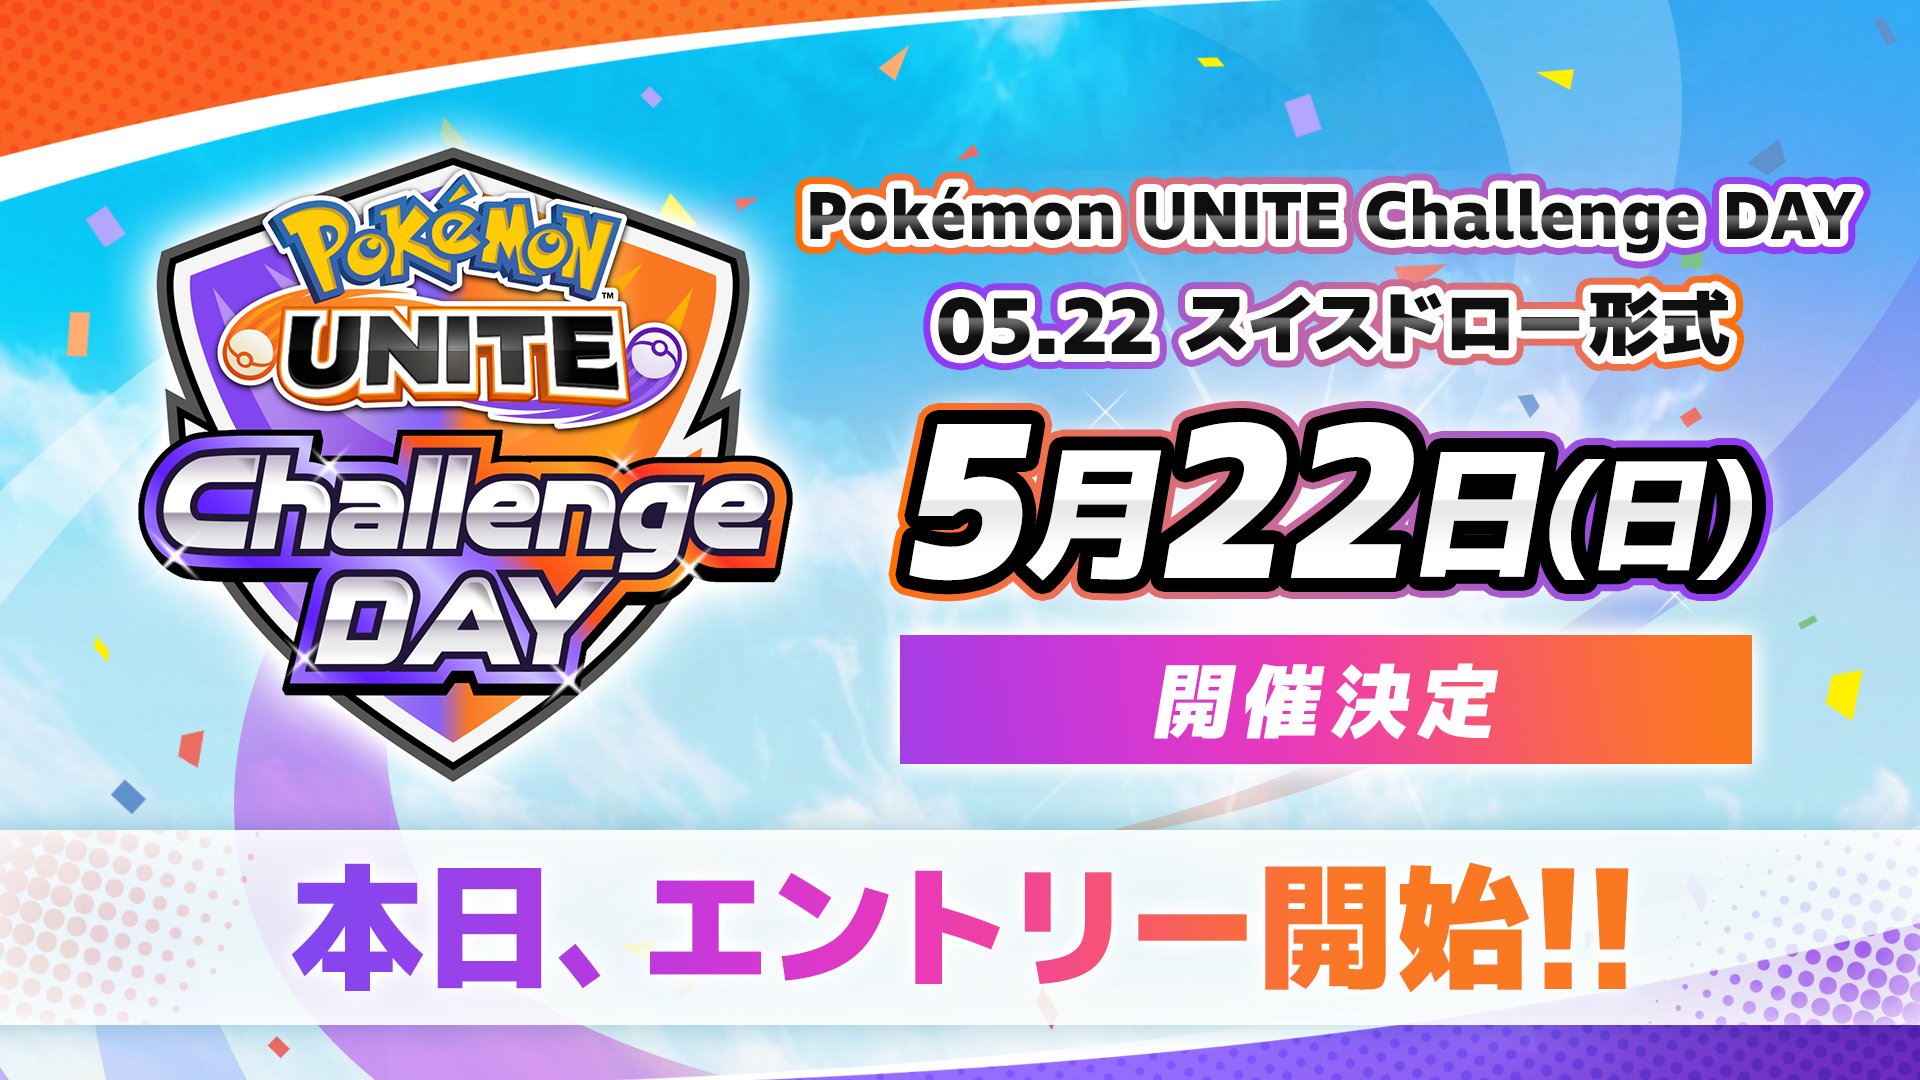 「Pokémon UNITE Challenge DAY」05.22 スイスドロー形式